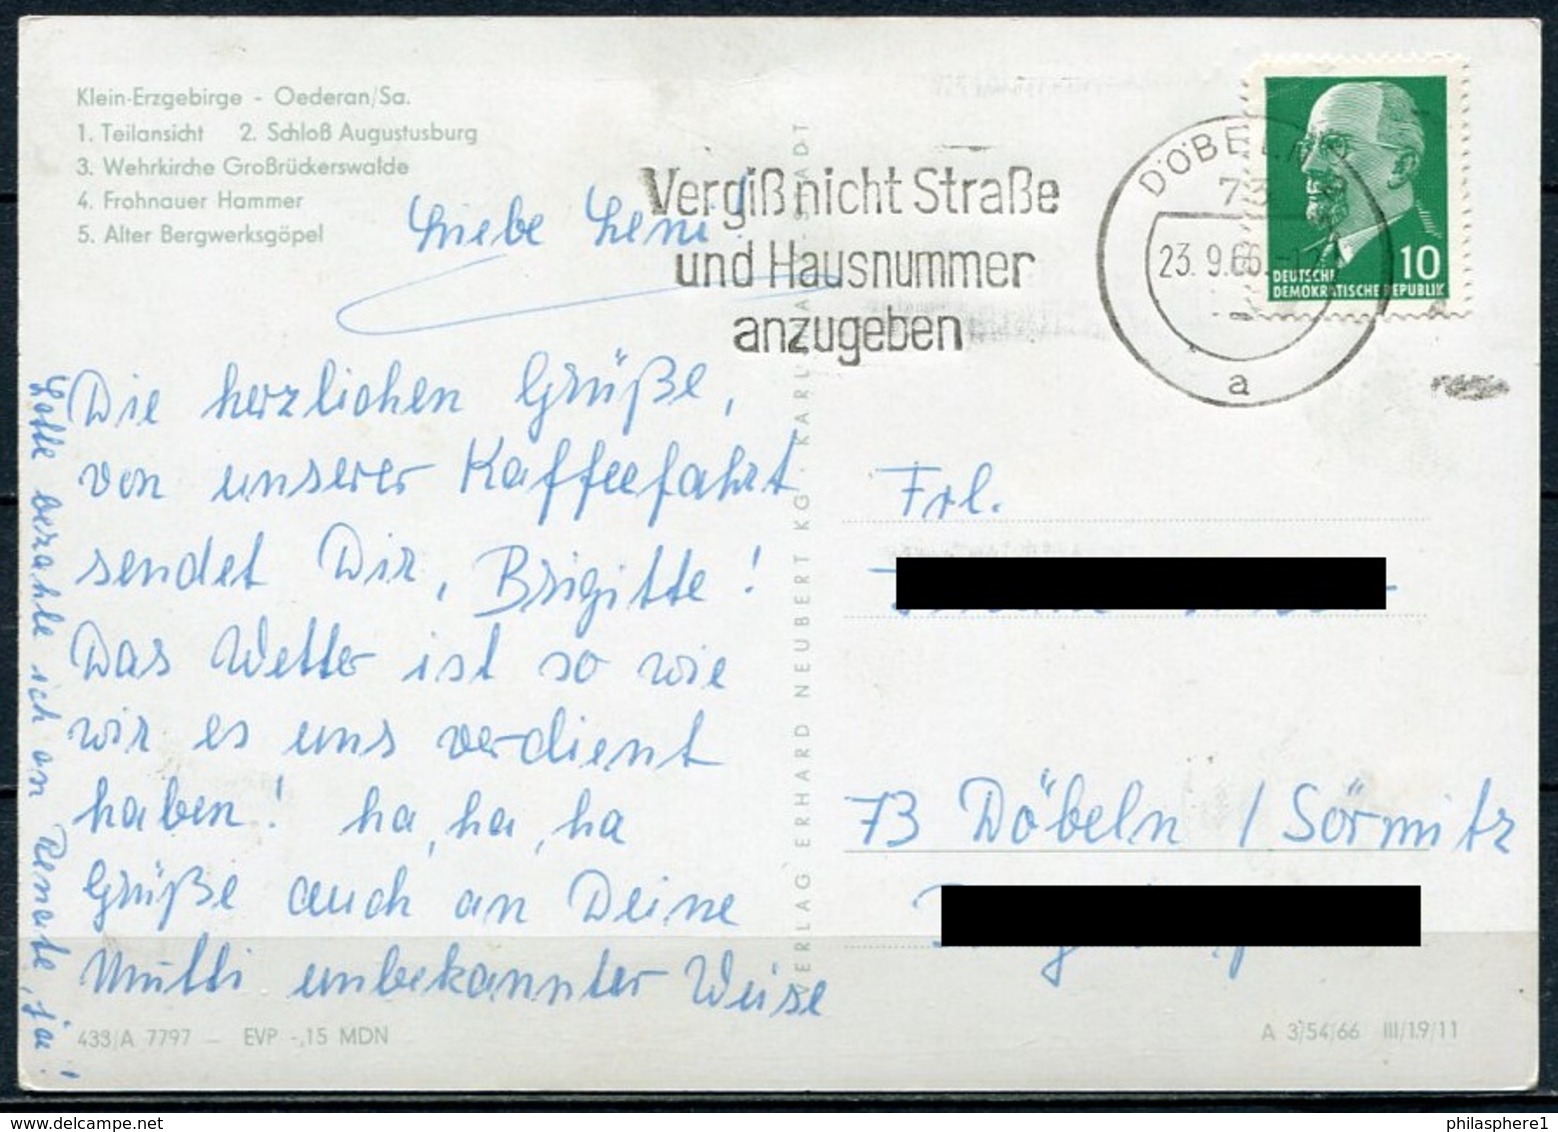 (0964) Oederan / Klein-Erzgebirge / Mehrbildkarte - Gel. 1966 - DDR - Oederan